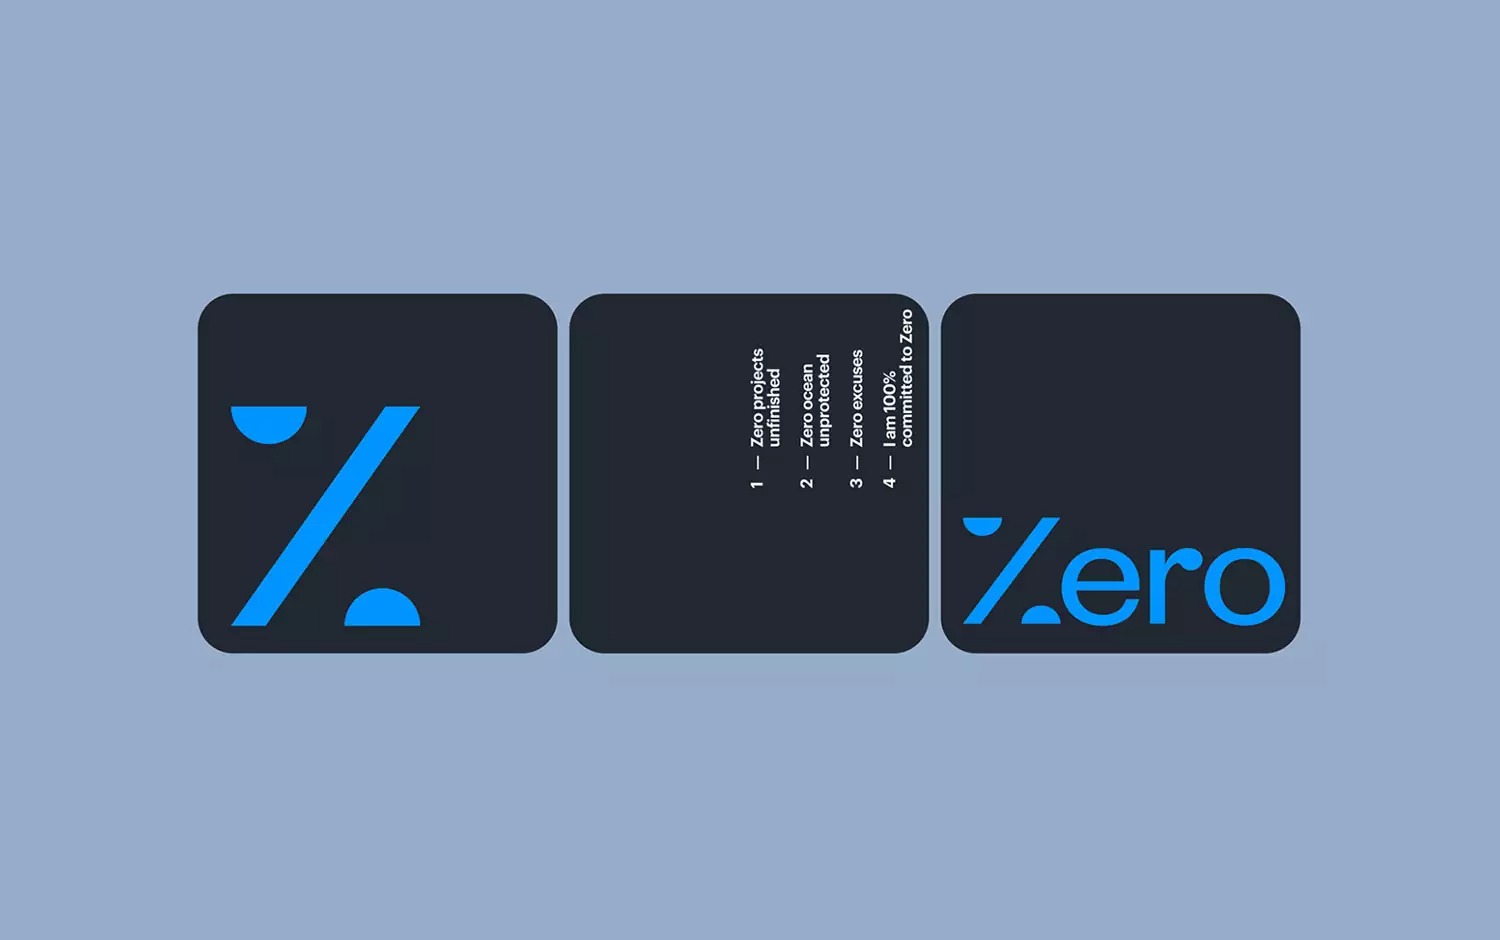 Project Zero（零计划）公益组织视觉形象设计